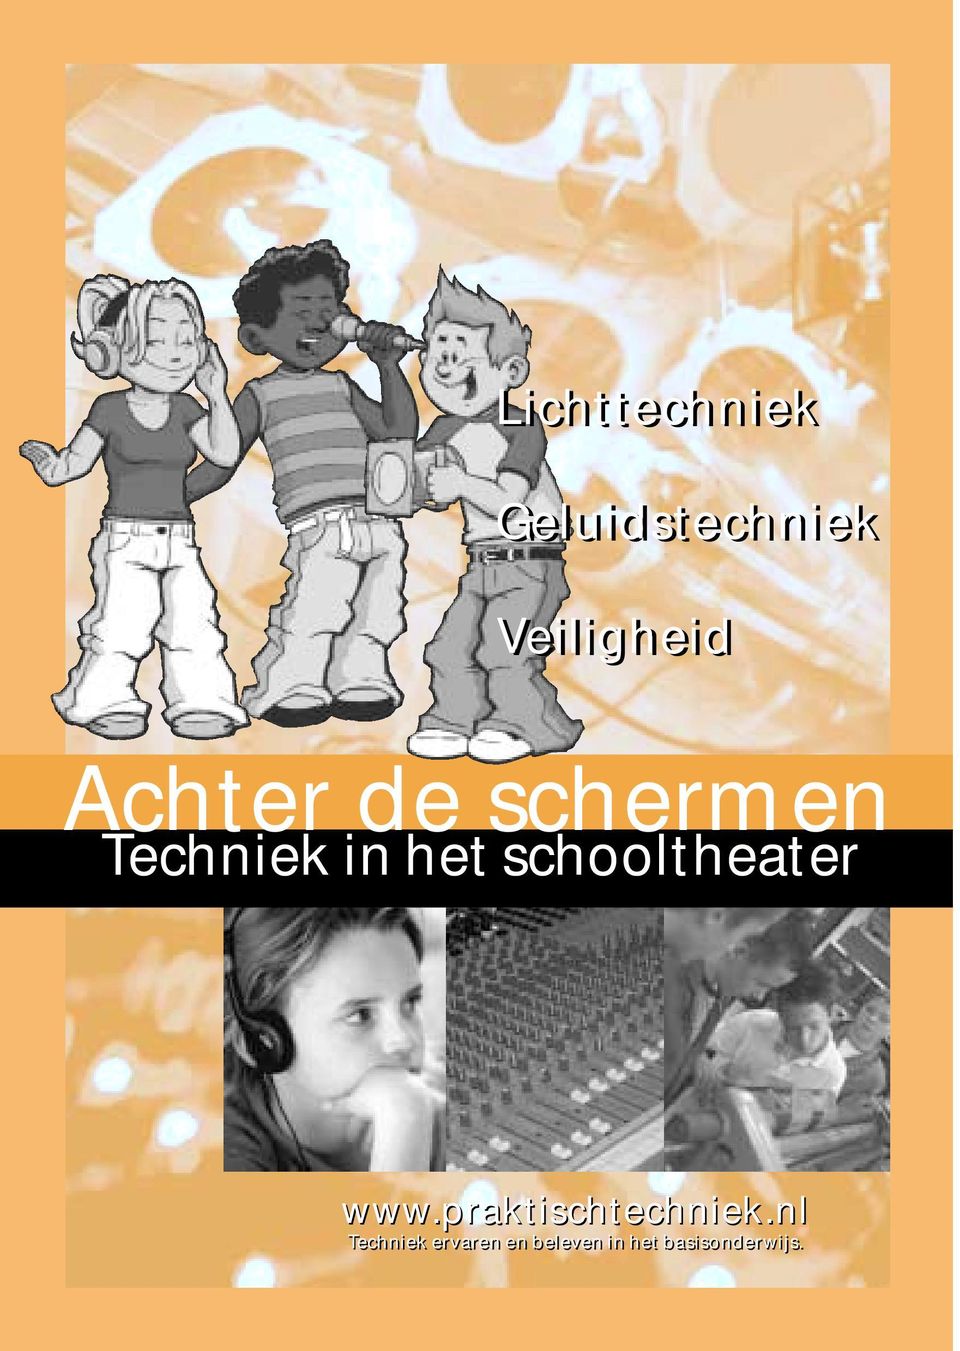 schooltheater www.praktischtechniek.